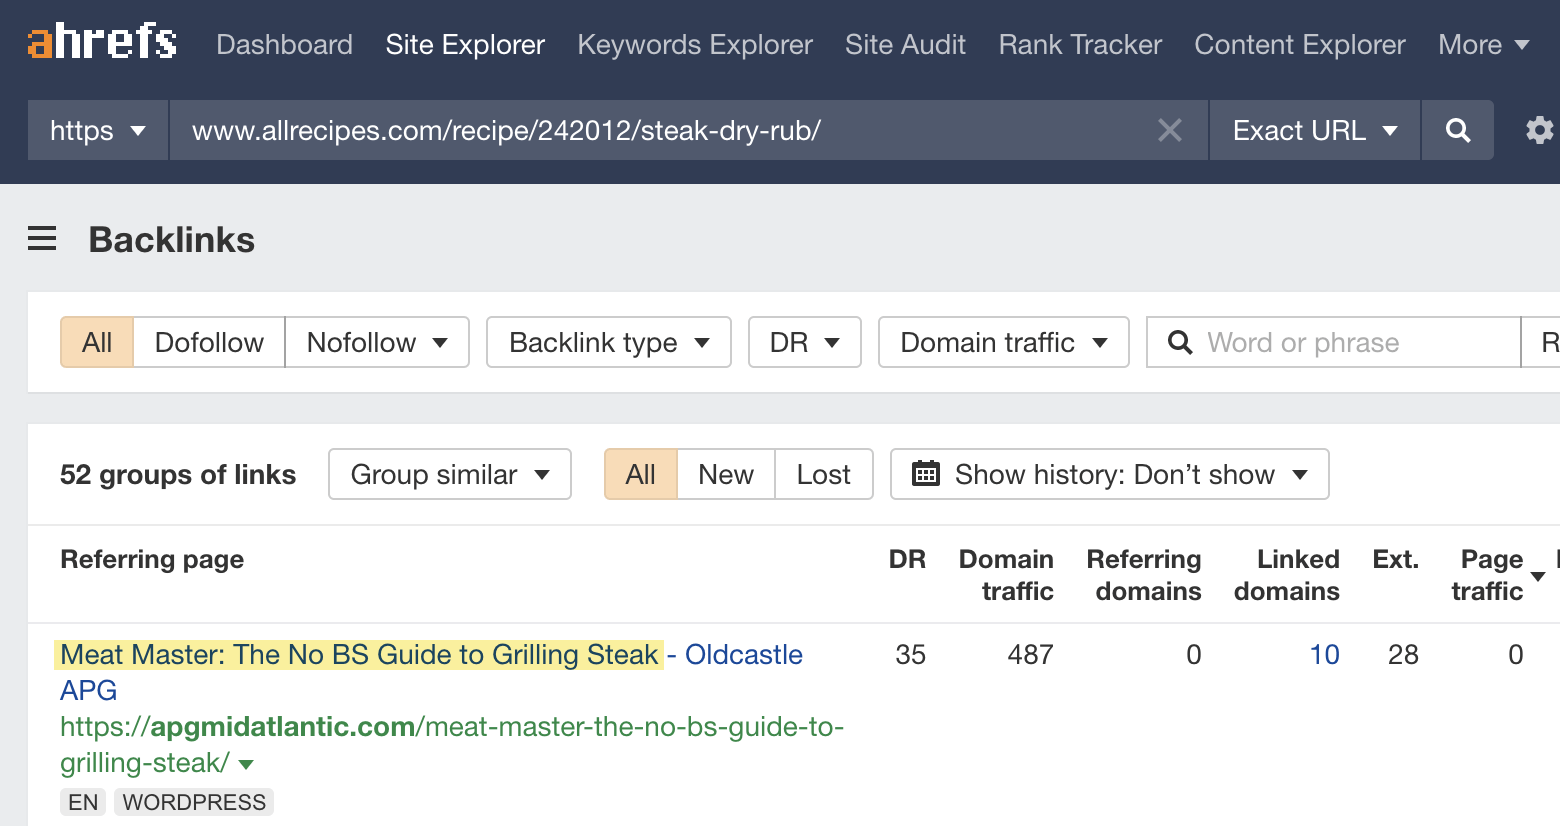 Backlink in Site Explorer